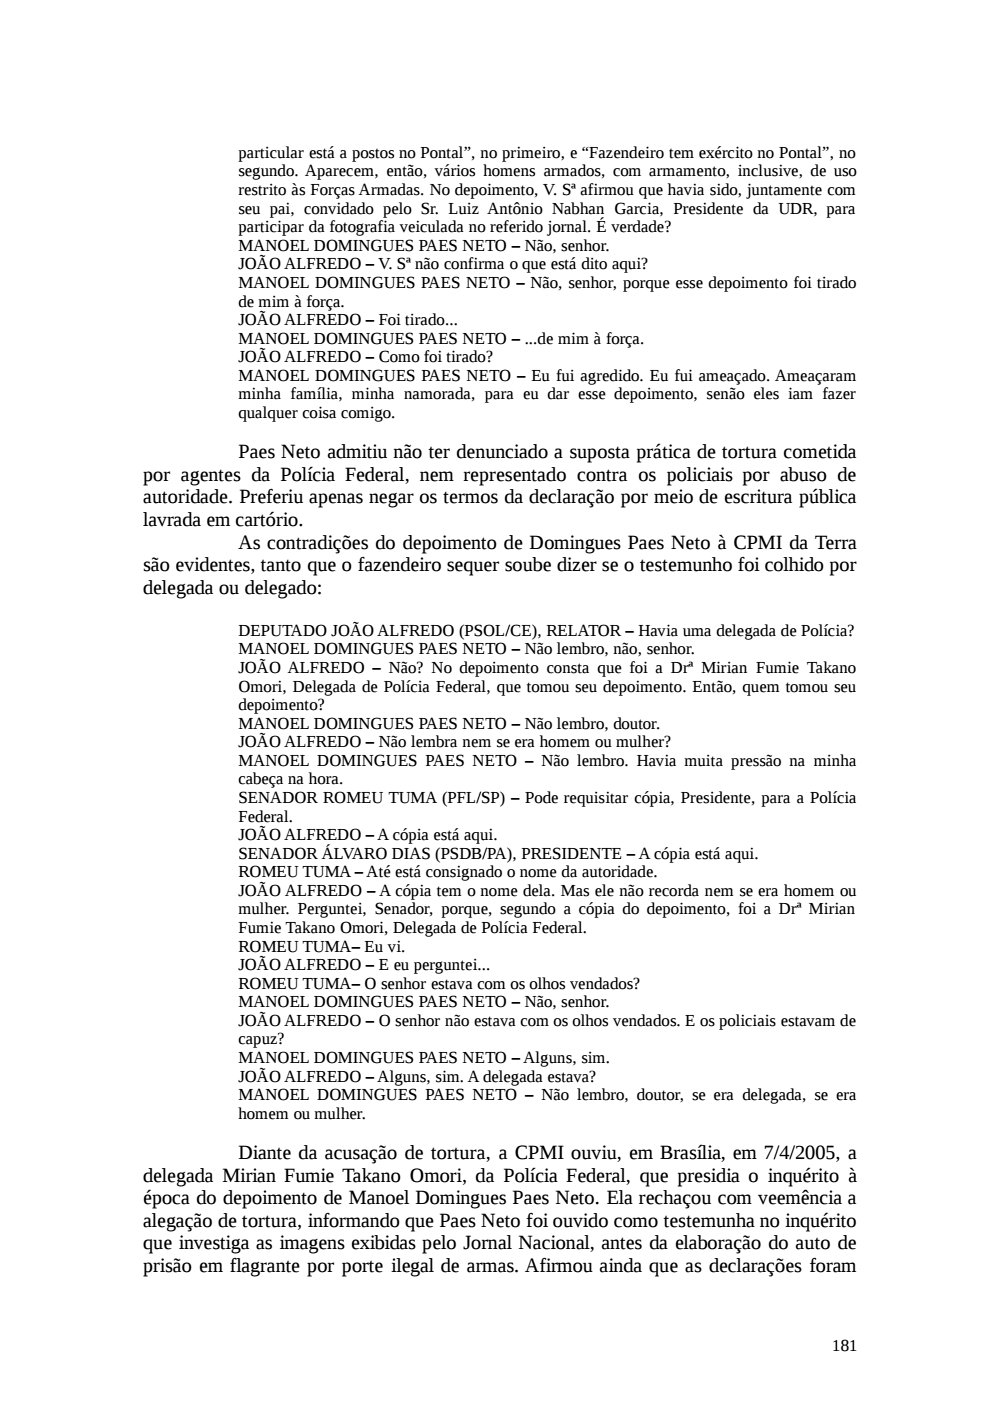 Page 181 from Relatório final da comissão